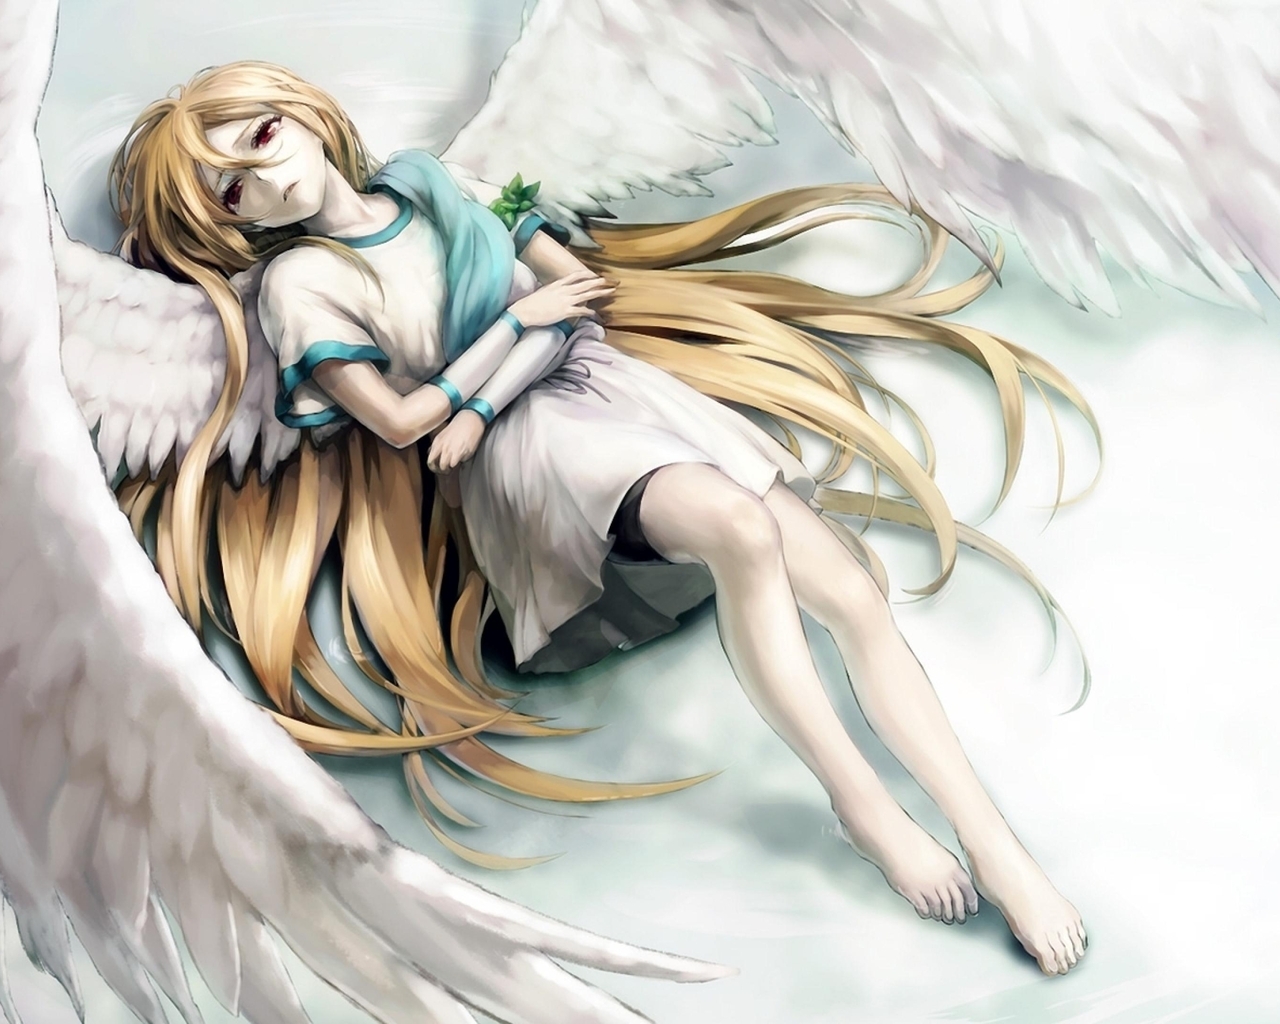 Картинка: Девушка, Inazuma Eleven, ангел, крылья, перья, волосы, чувство, боль, печаль